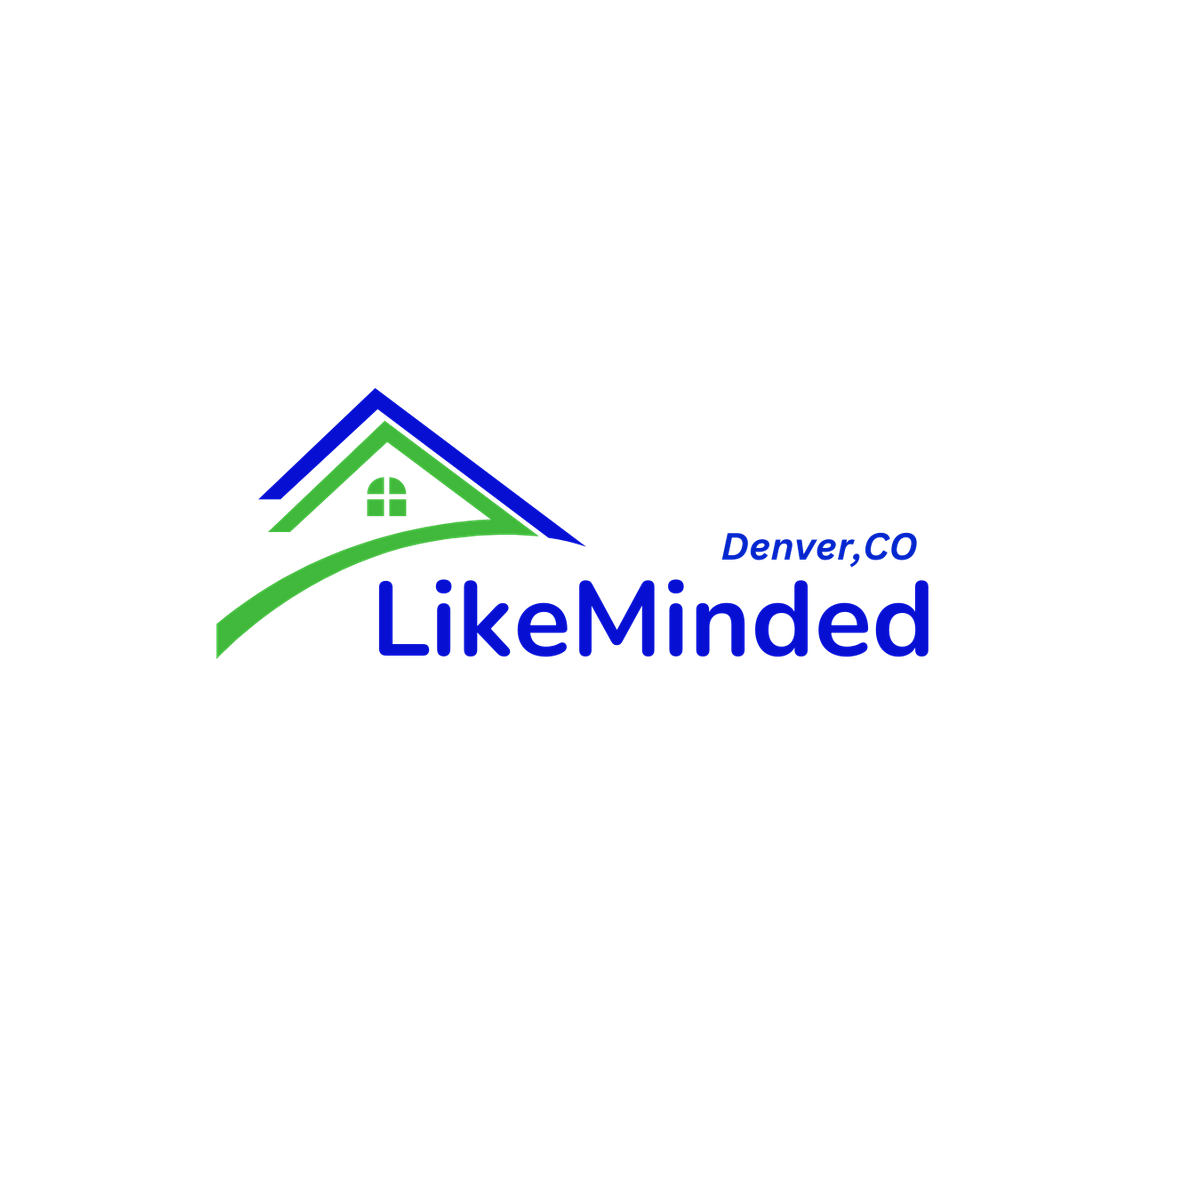 LikeMinded- Denver Real Estate Investors Meetup